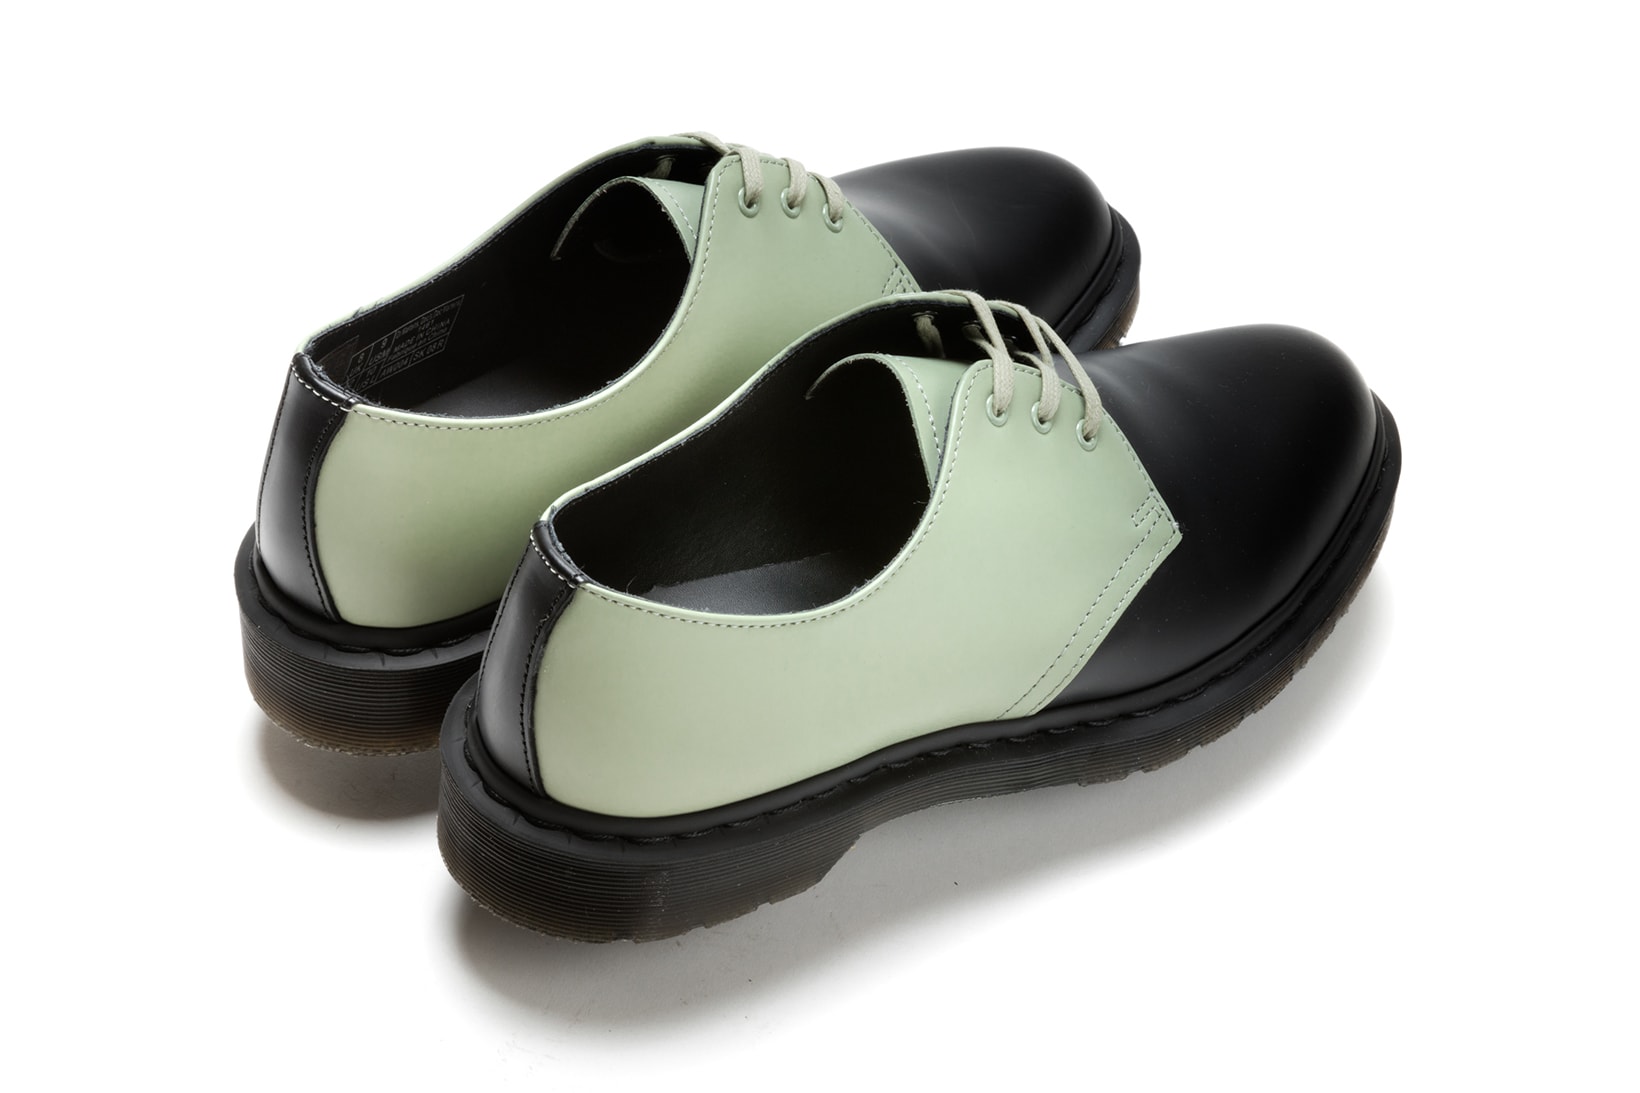 Concepts Dr Martens 1461 Shoe